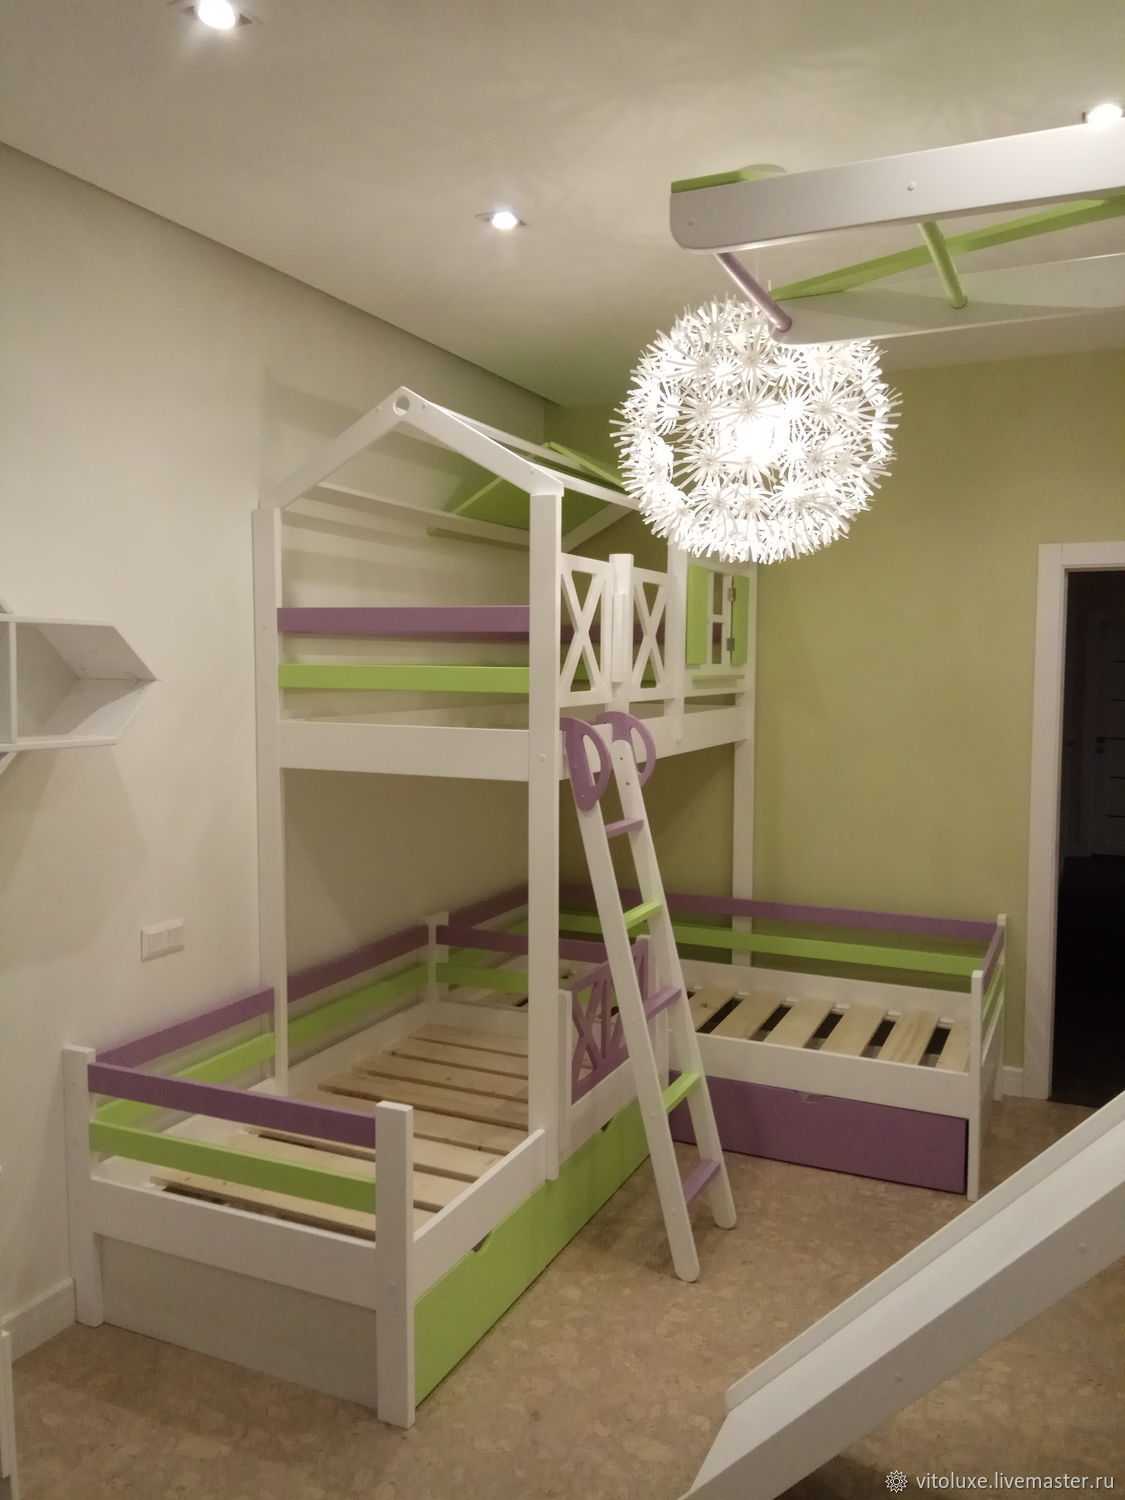 Варианты дизайна маленькой детской комнаты для троих детей Как организовать пространство для разнополых детей Правила организации комнаты для детей одного пола